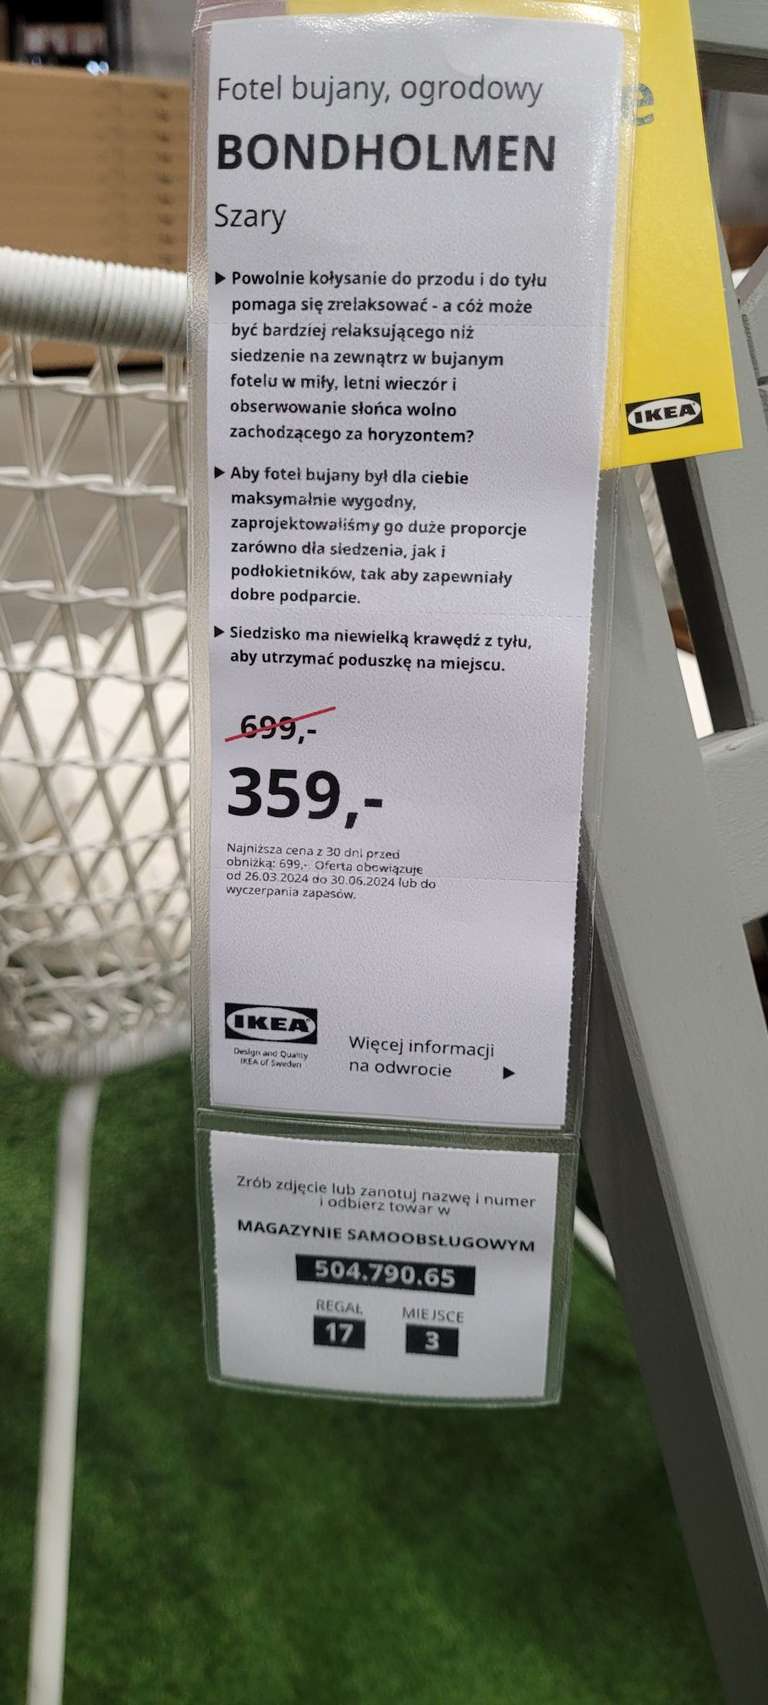 Ogrodowy fotel bujany (IKEA LUBLIN lokalnie) Bundholmen 504.790.65